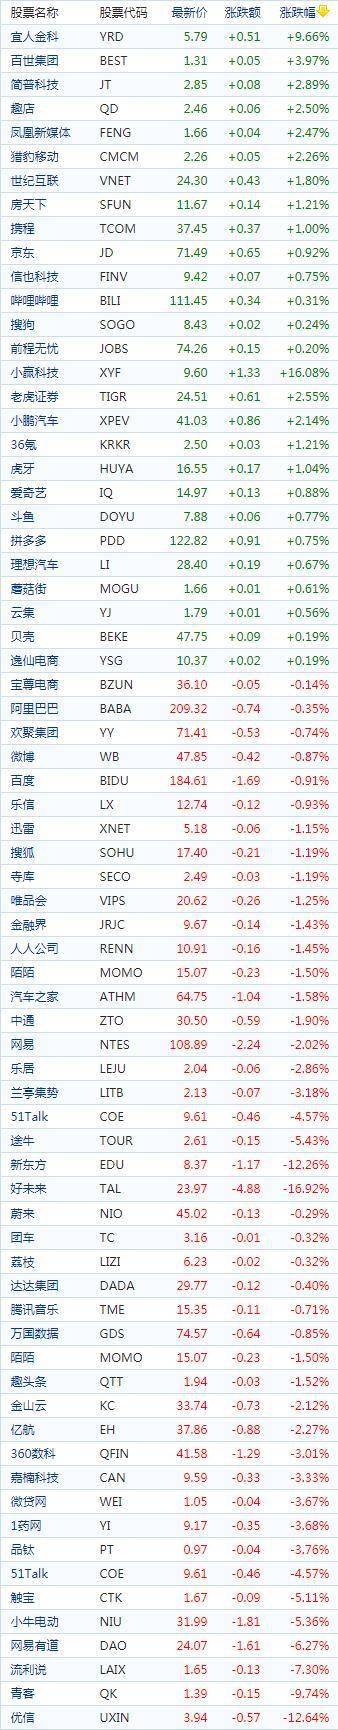 中国概念股周三收盘涨跌互现 纳斯达克综合指数下跌33.17点